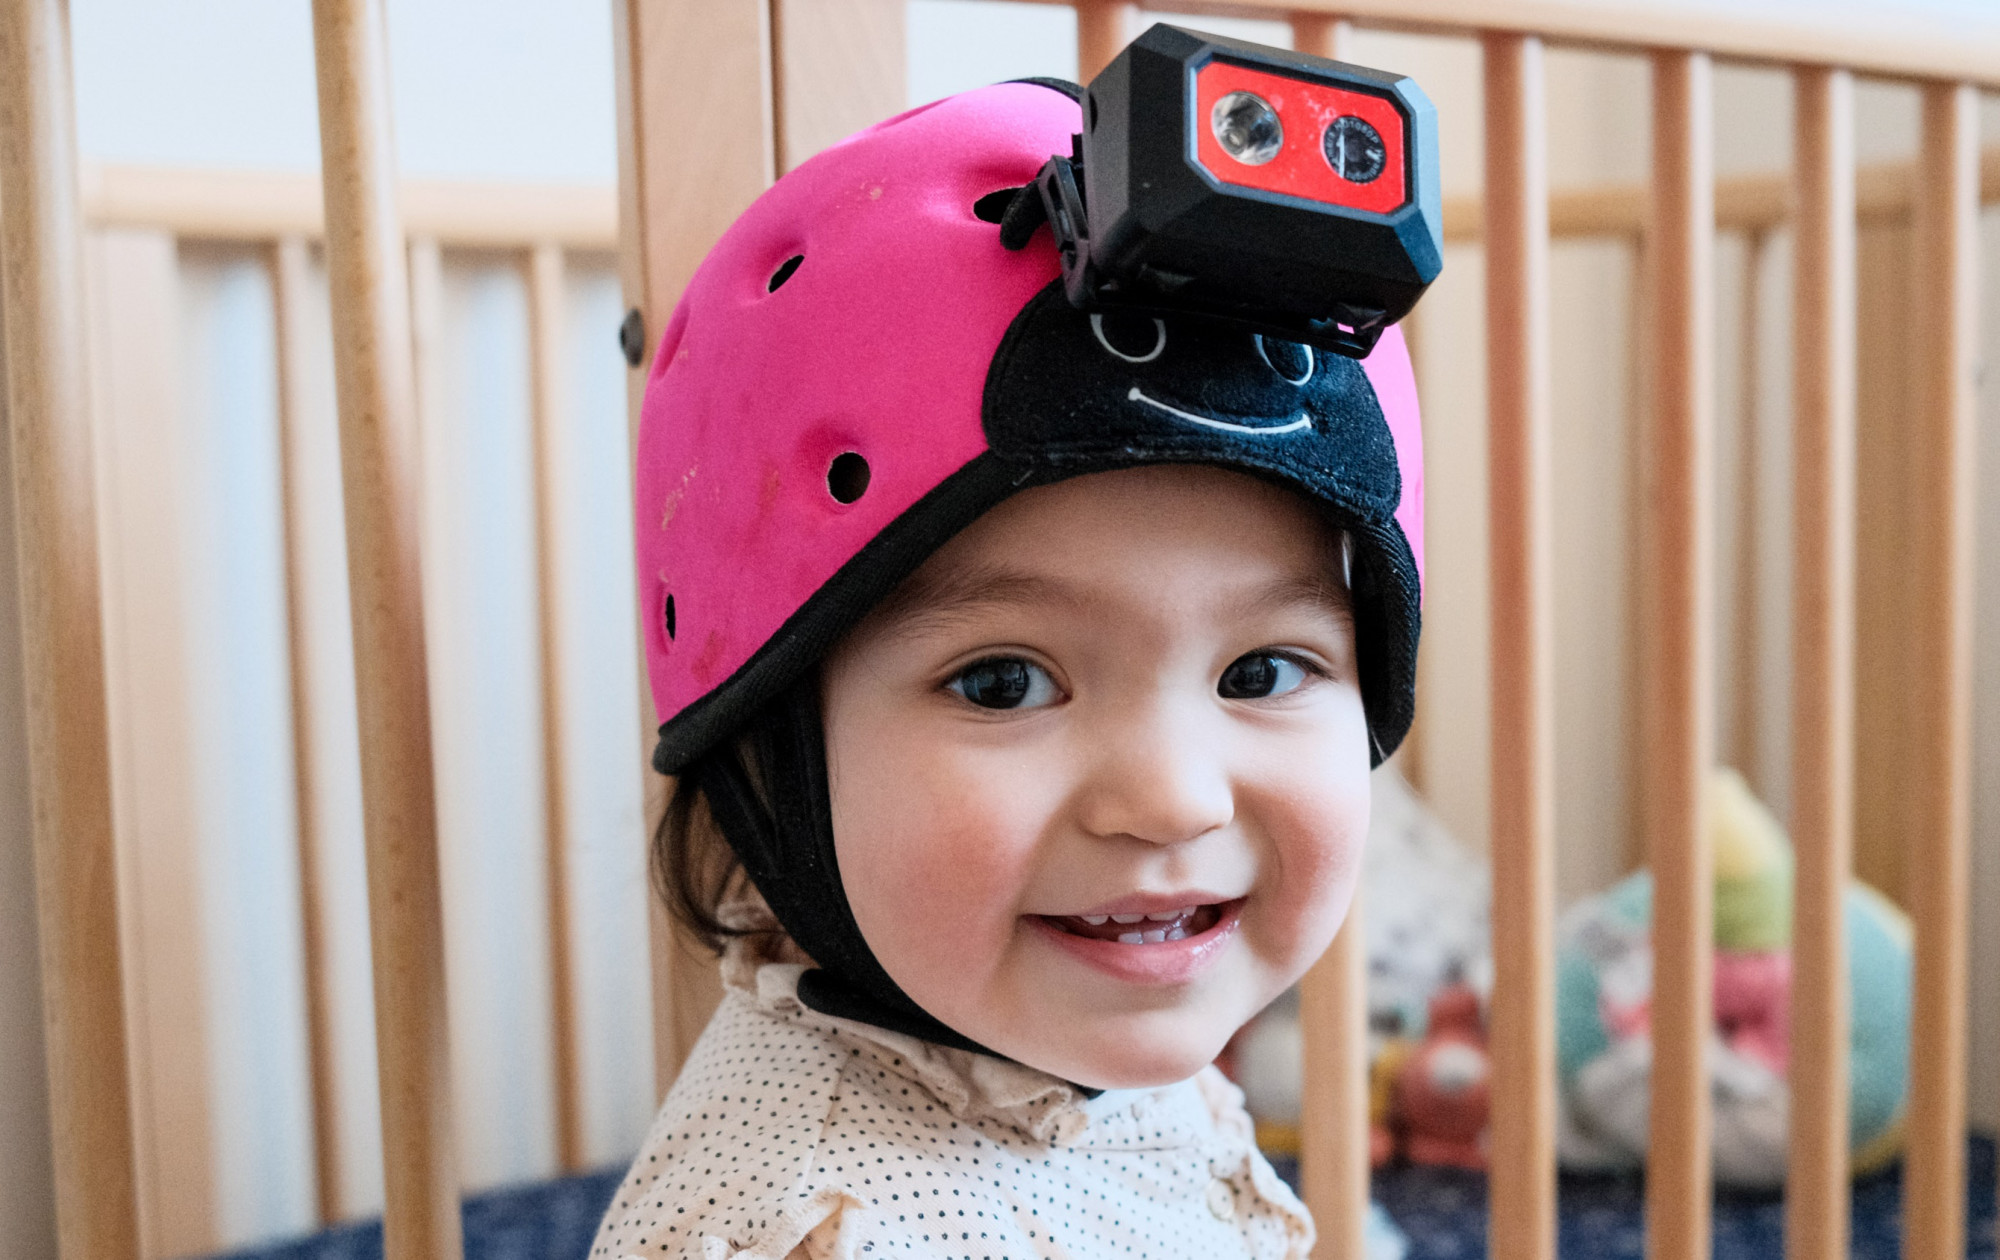 Egy kisbaba fejére szerelt kamera segített az AI-nak megérteni, hogyan sajátítják el a nyelvet a gyerekek